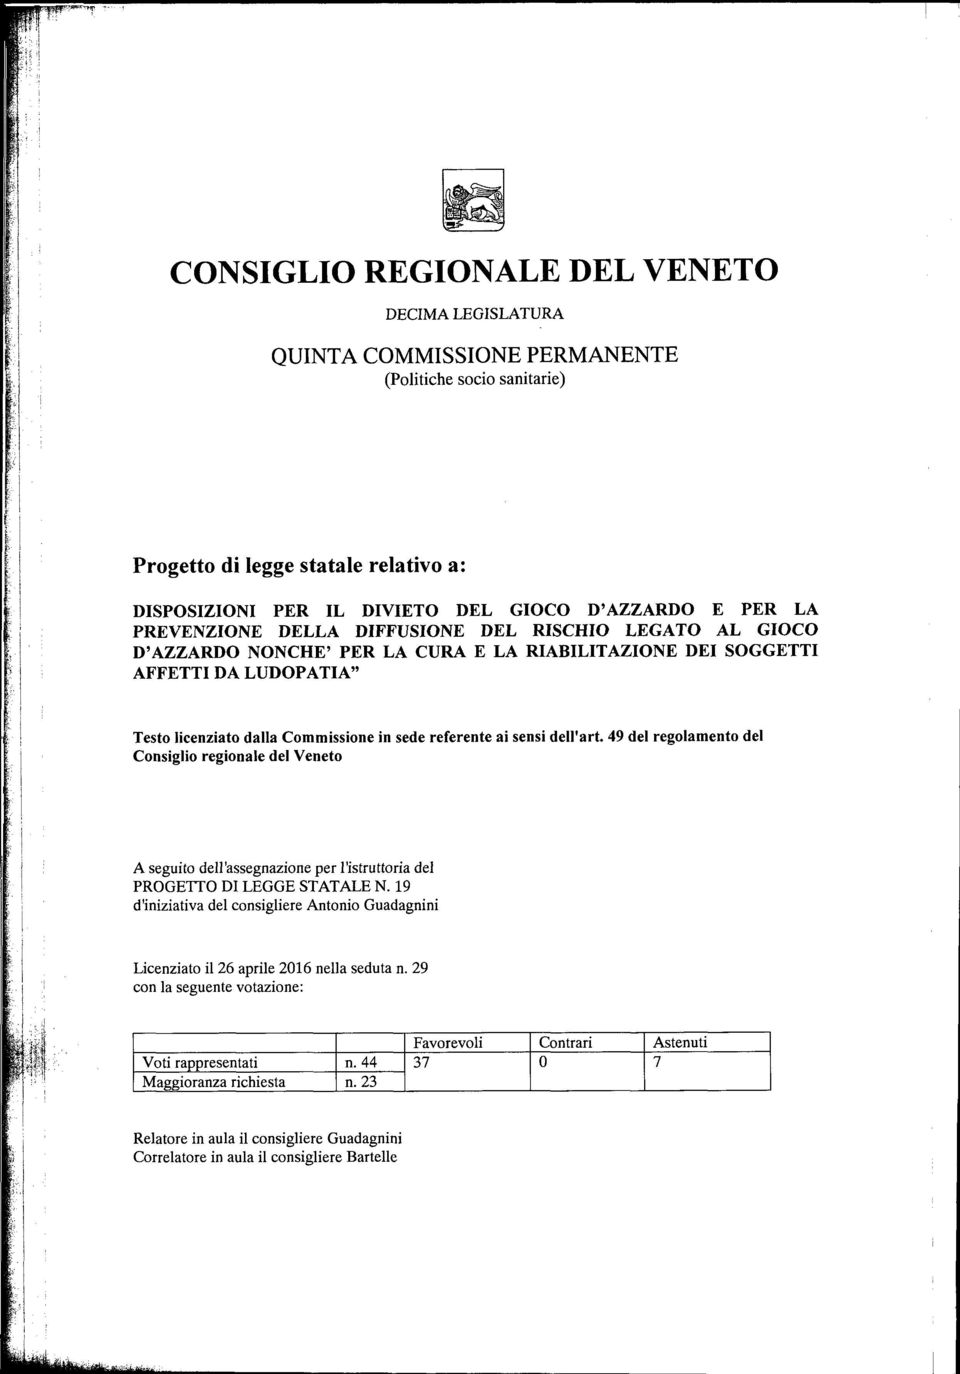 ai sensi dell'art. 49 del regolamento del Consiglio regionale del Veneto A seguito dell'assegnazione per l'istruttoria del PROGETTO DI LEGGE STATALE N.